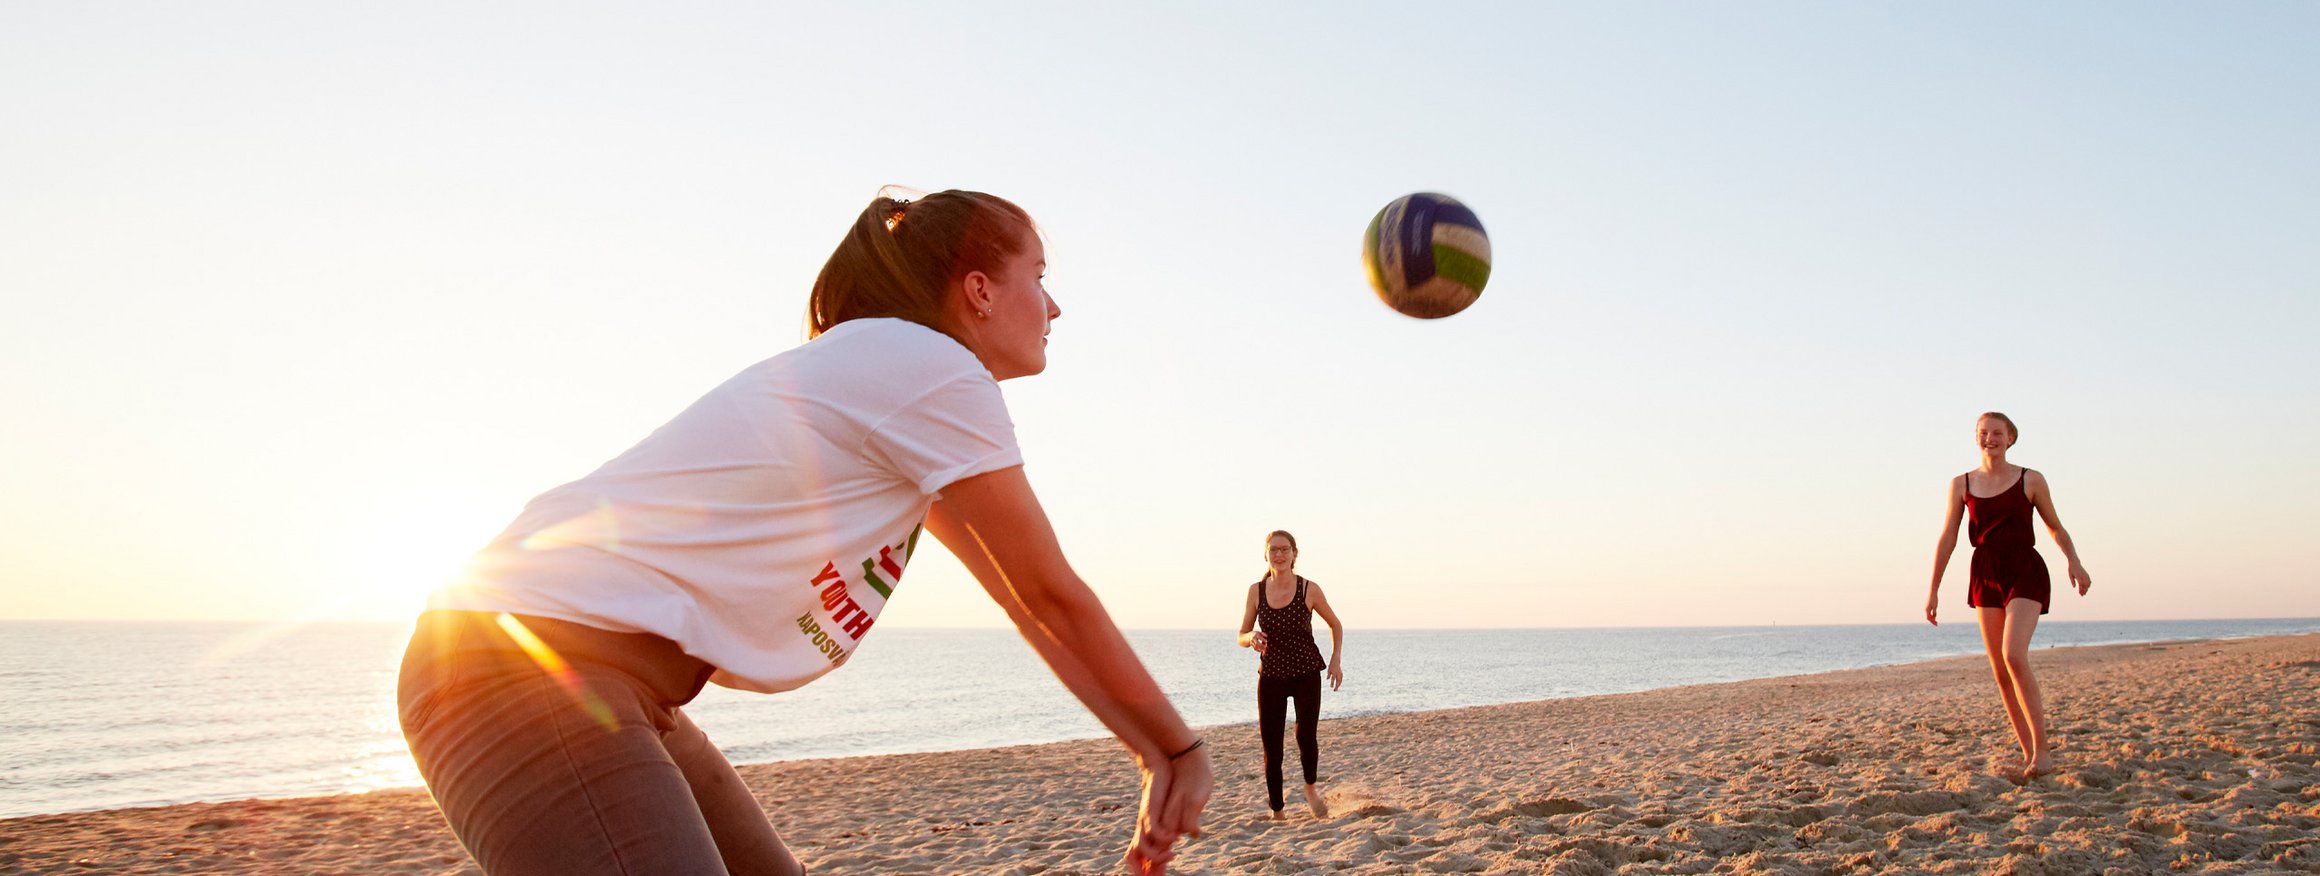 Drei junge Frauen spielen an einem Strand Beachvolleyball